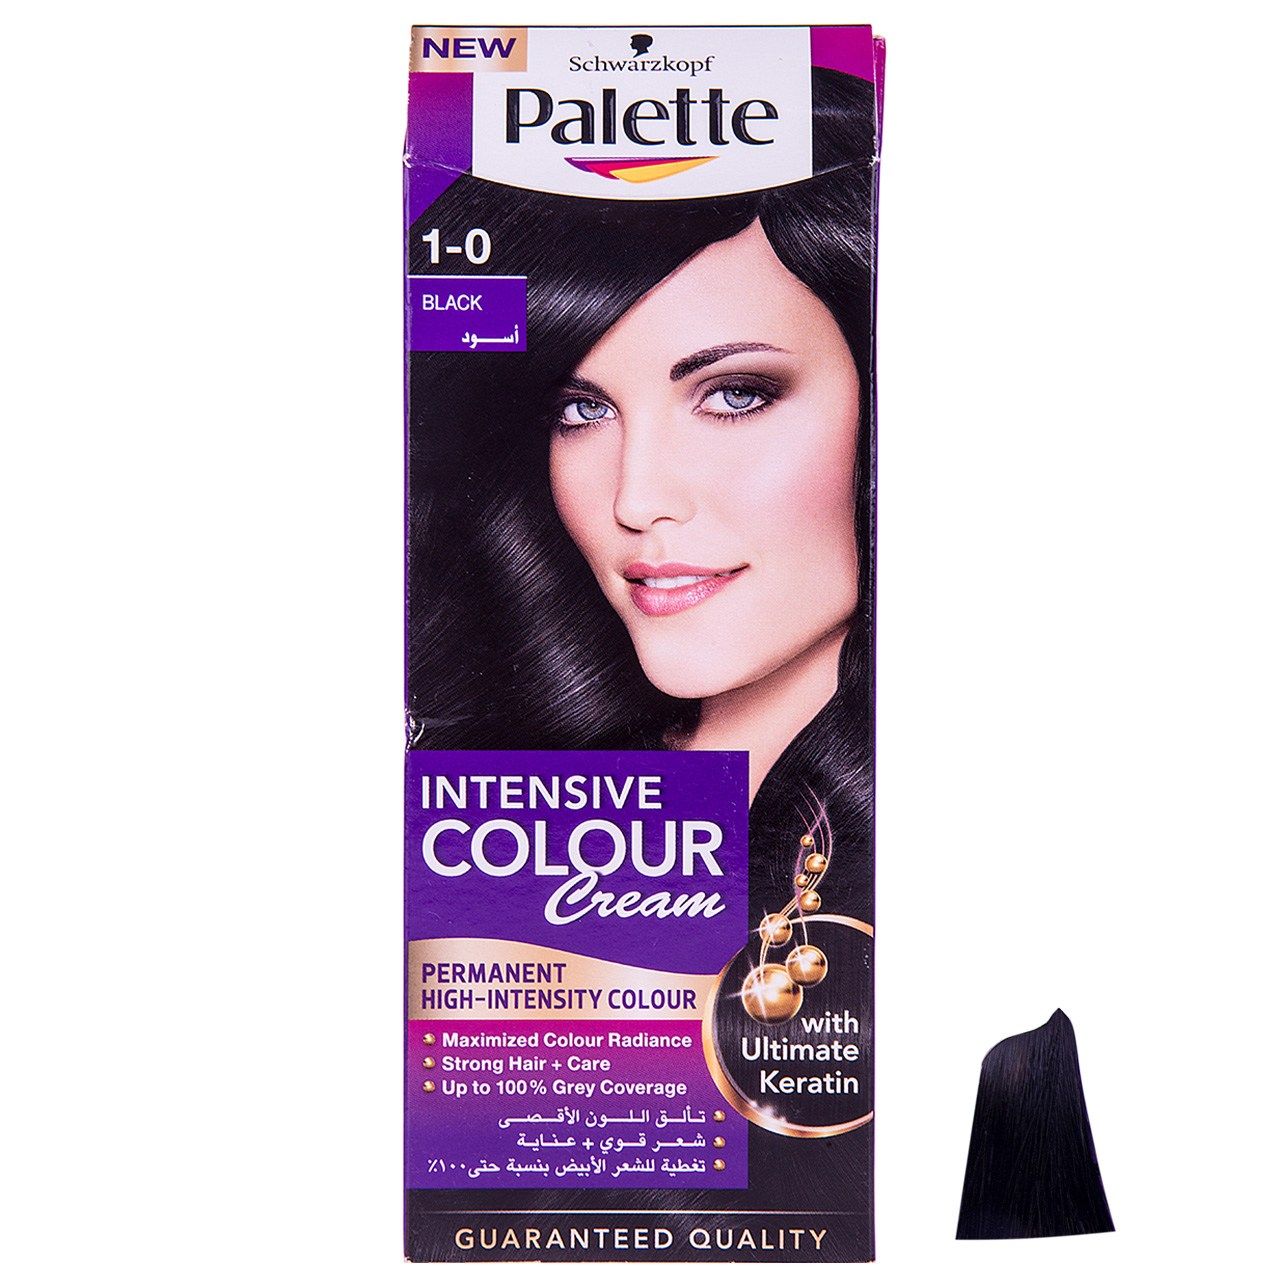 کیت رنگ مو پلت سری Intensive Colour Cream مدل Black شماره 0-1 -  - 1